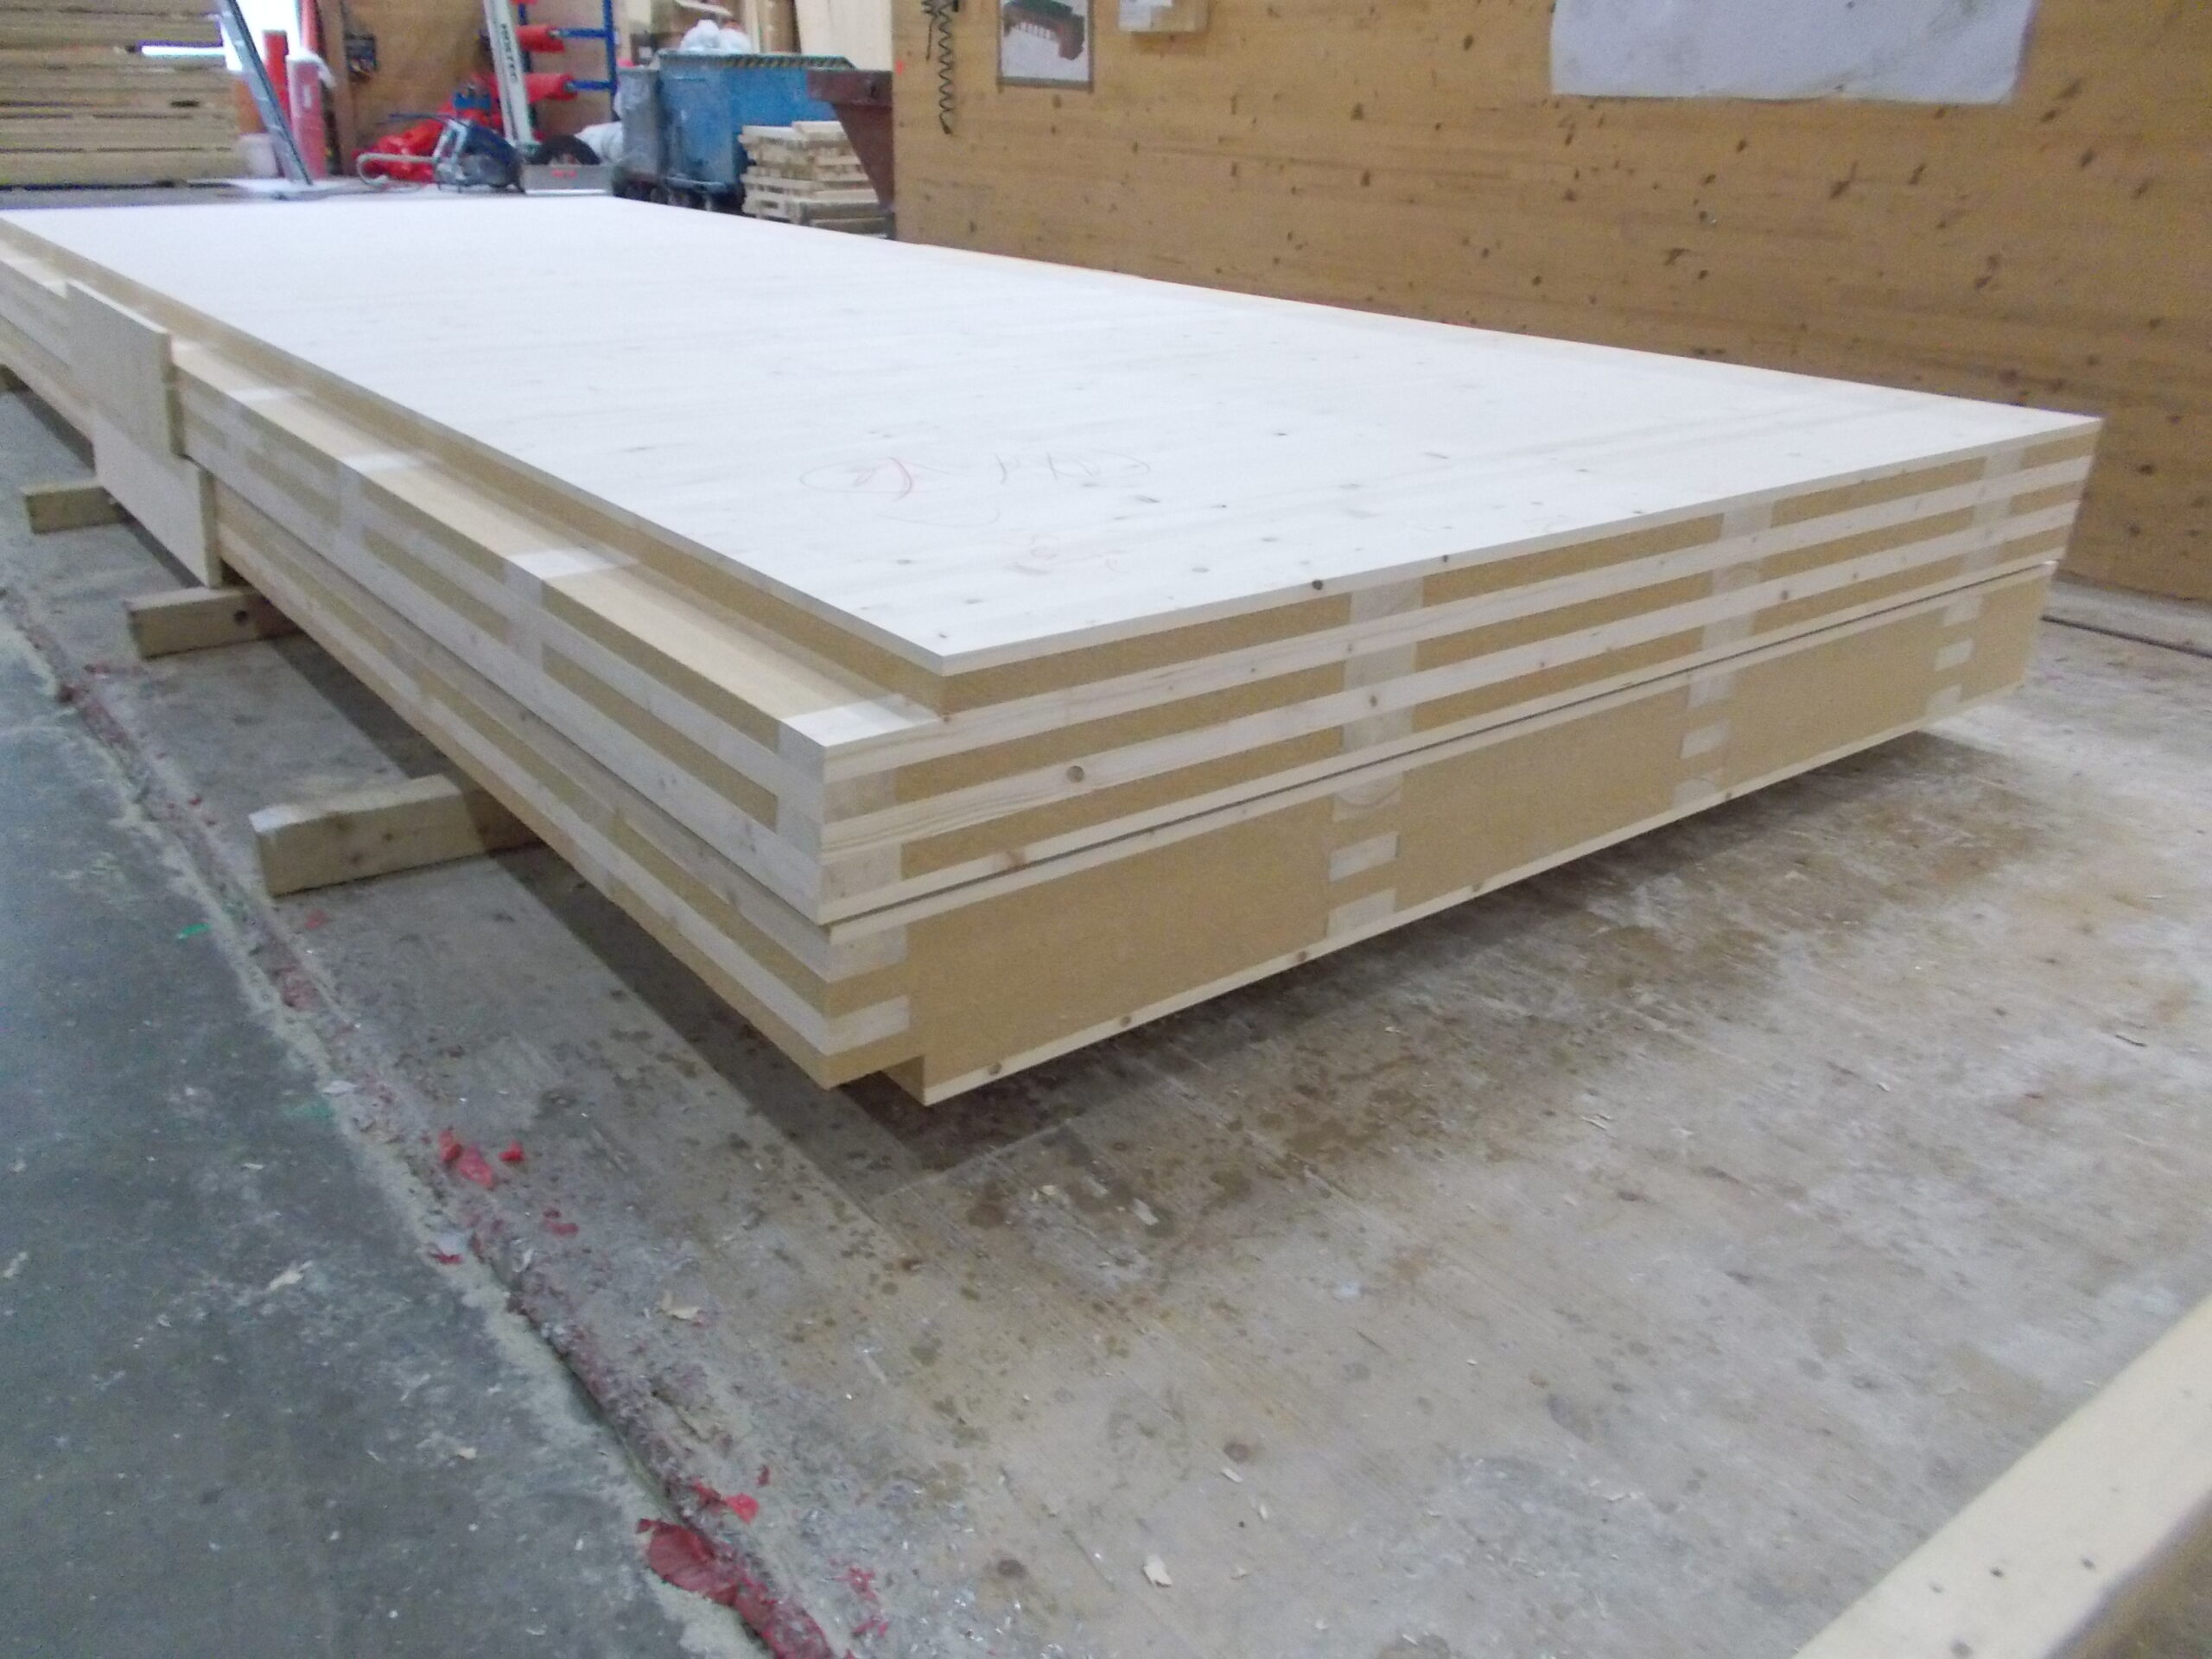 Panneaux bois CLT, composés de plusieurs couches croisées de planches en bois massif séché